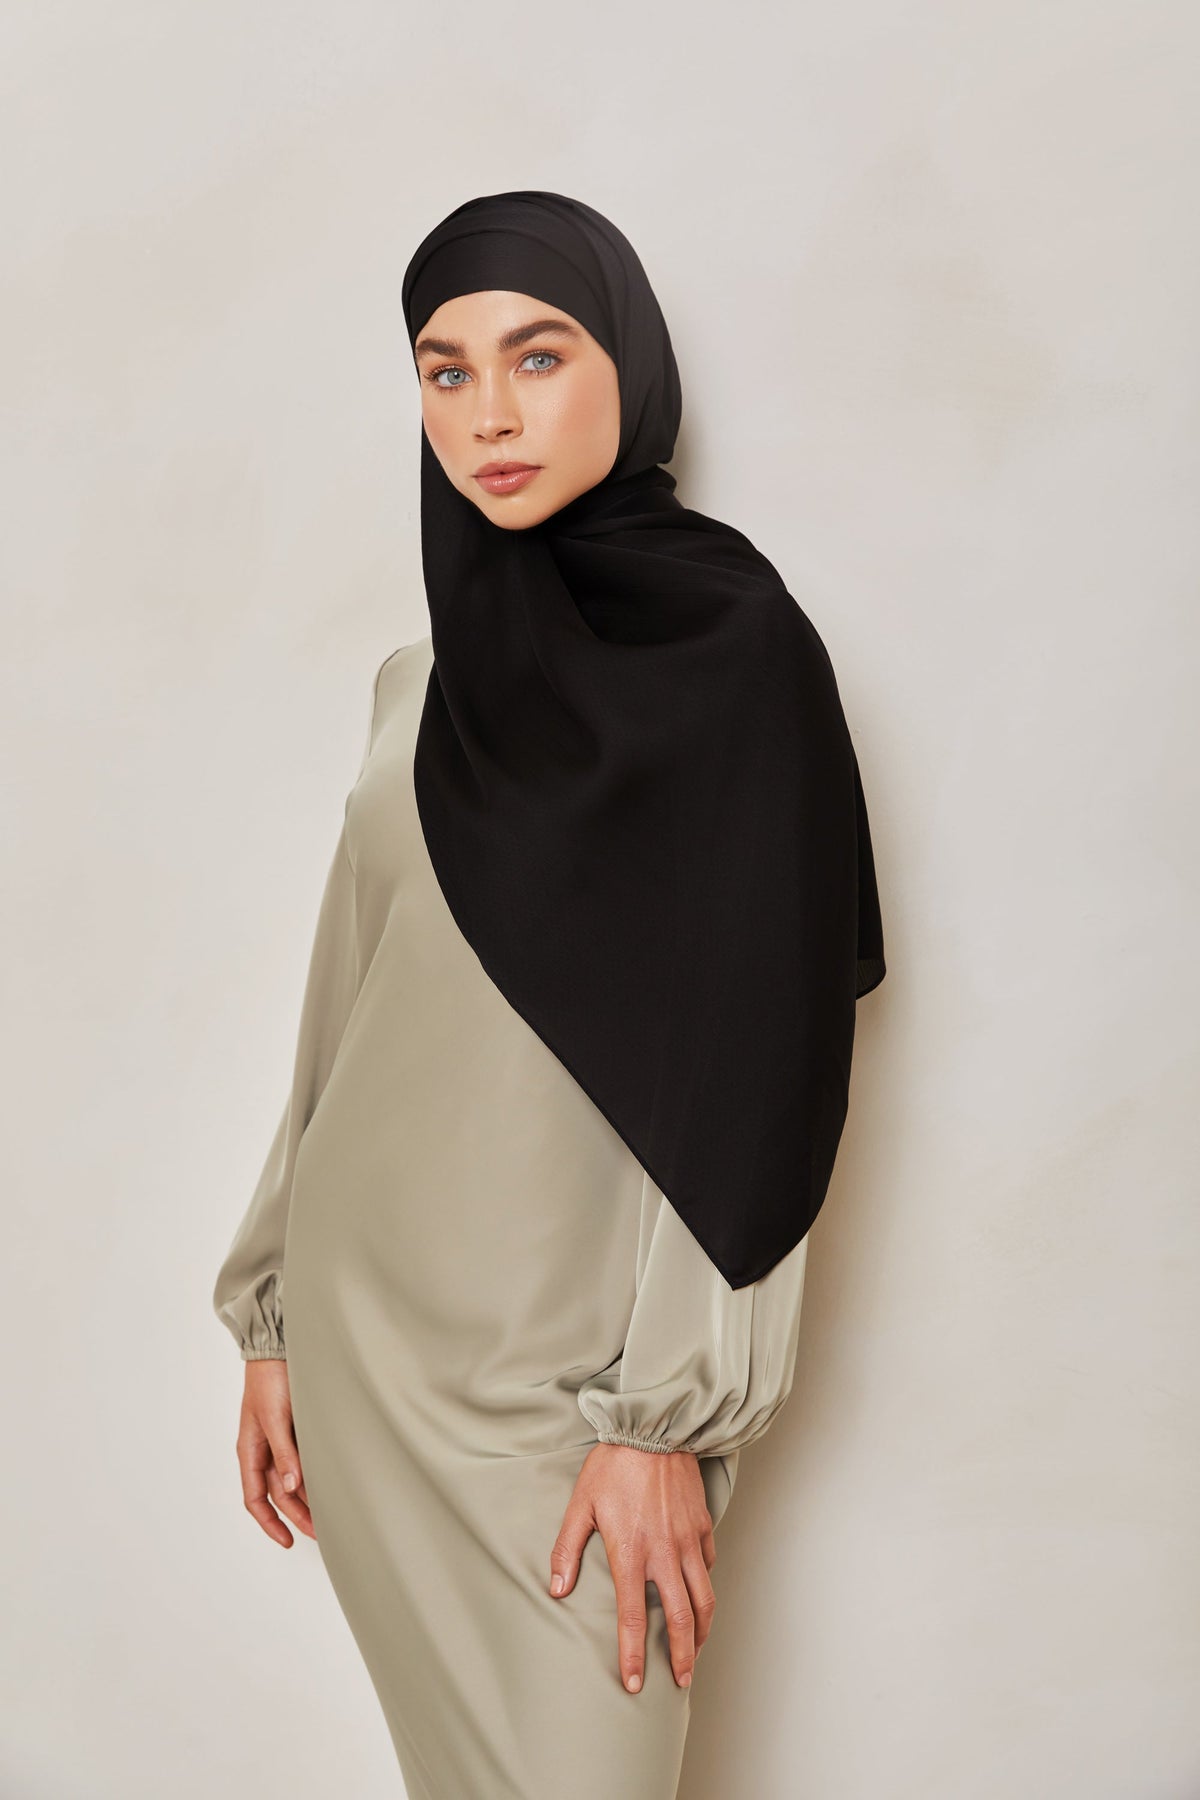 TEXTURE Crepe Hijab - Black Dots epschoolboard 